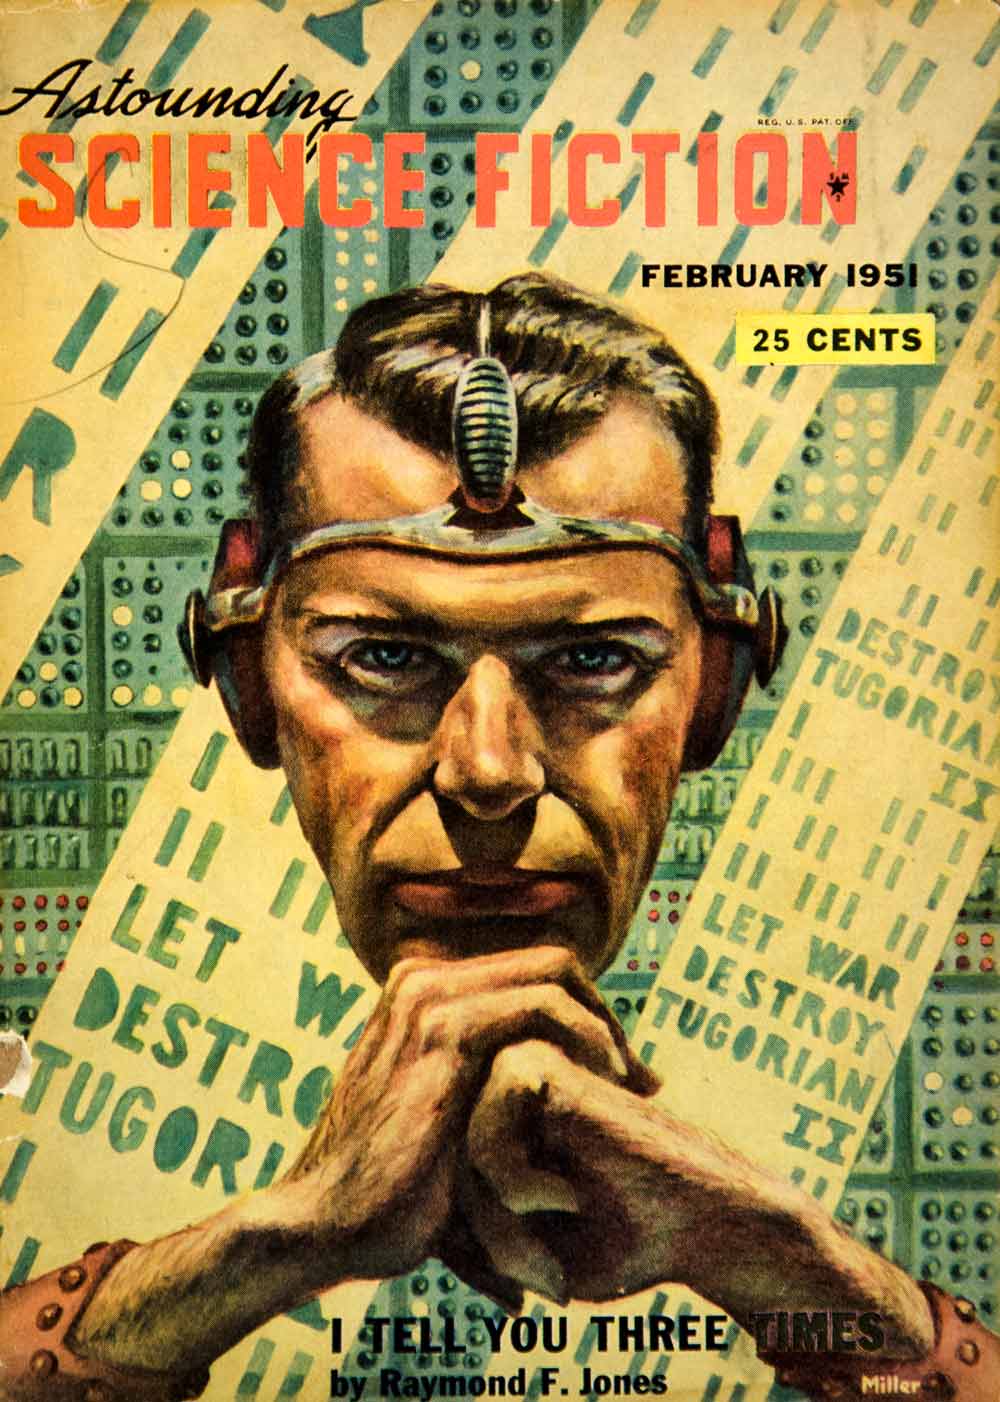 1951 Cover Astounding Science Fiction Ron Miller Art Raymond F Jones YSFC3